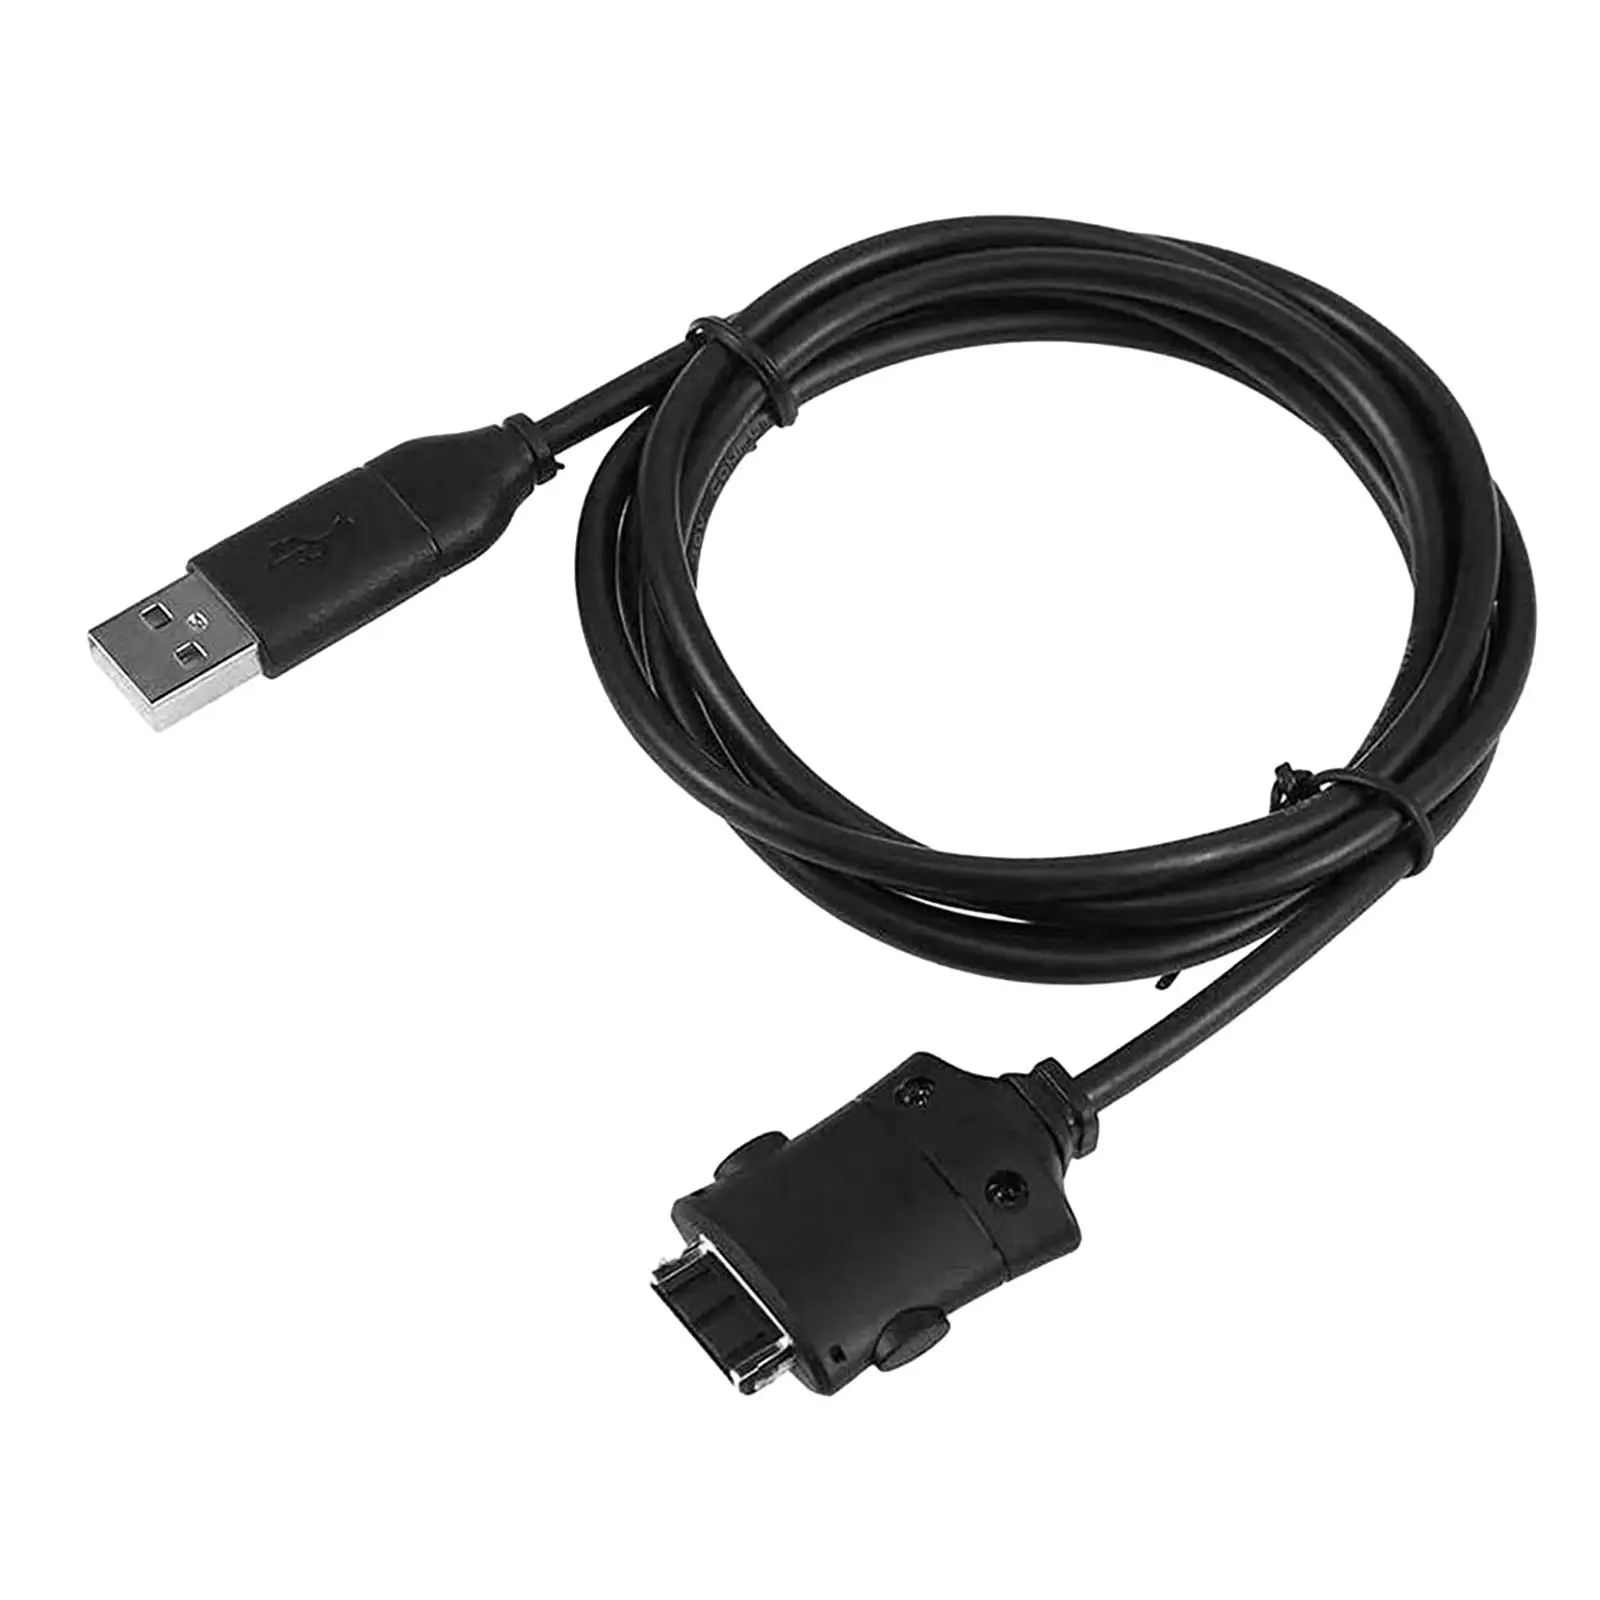 Suc-c2 USB Кабель Для Зарядки Данных Шнур Простой в Использовании Аксессуар Прочный Сменный Шнур для Передачи данных для Цифровой Камеры i85 L83T L70 i6 - 1